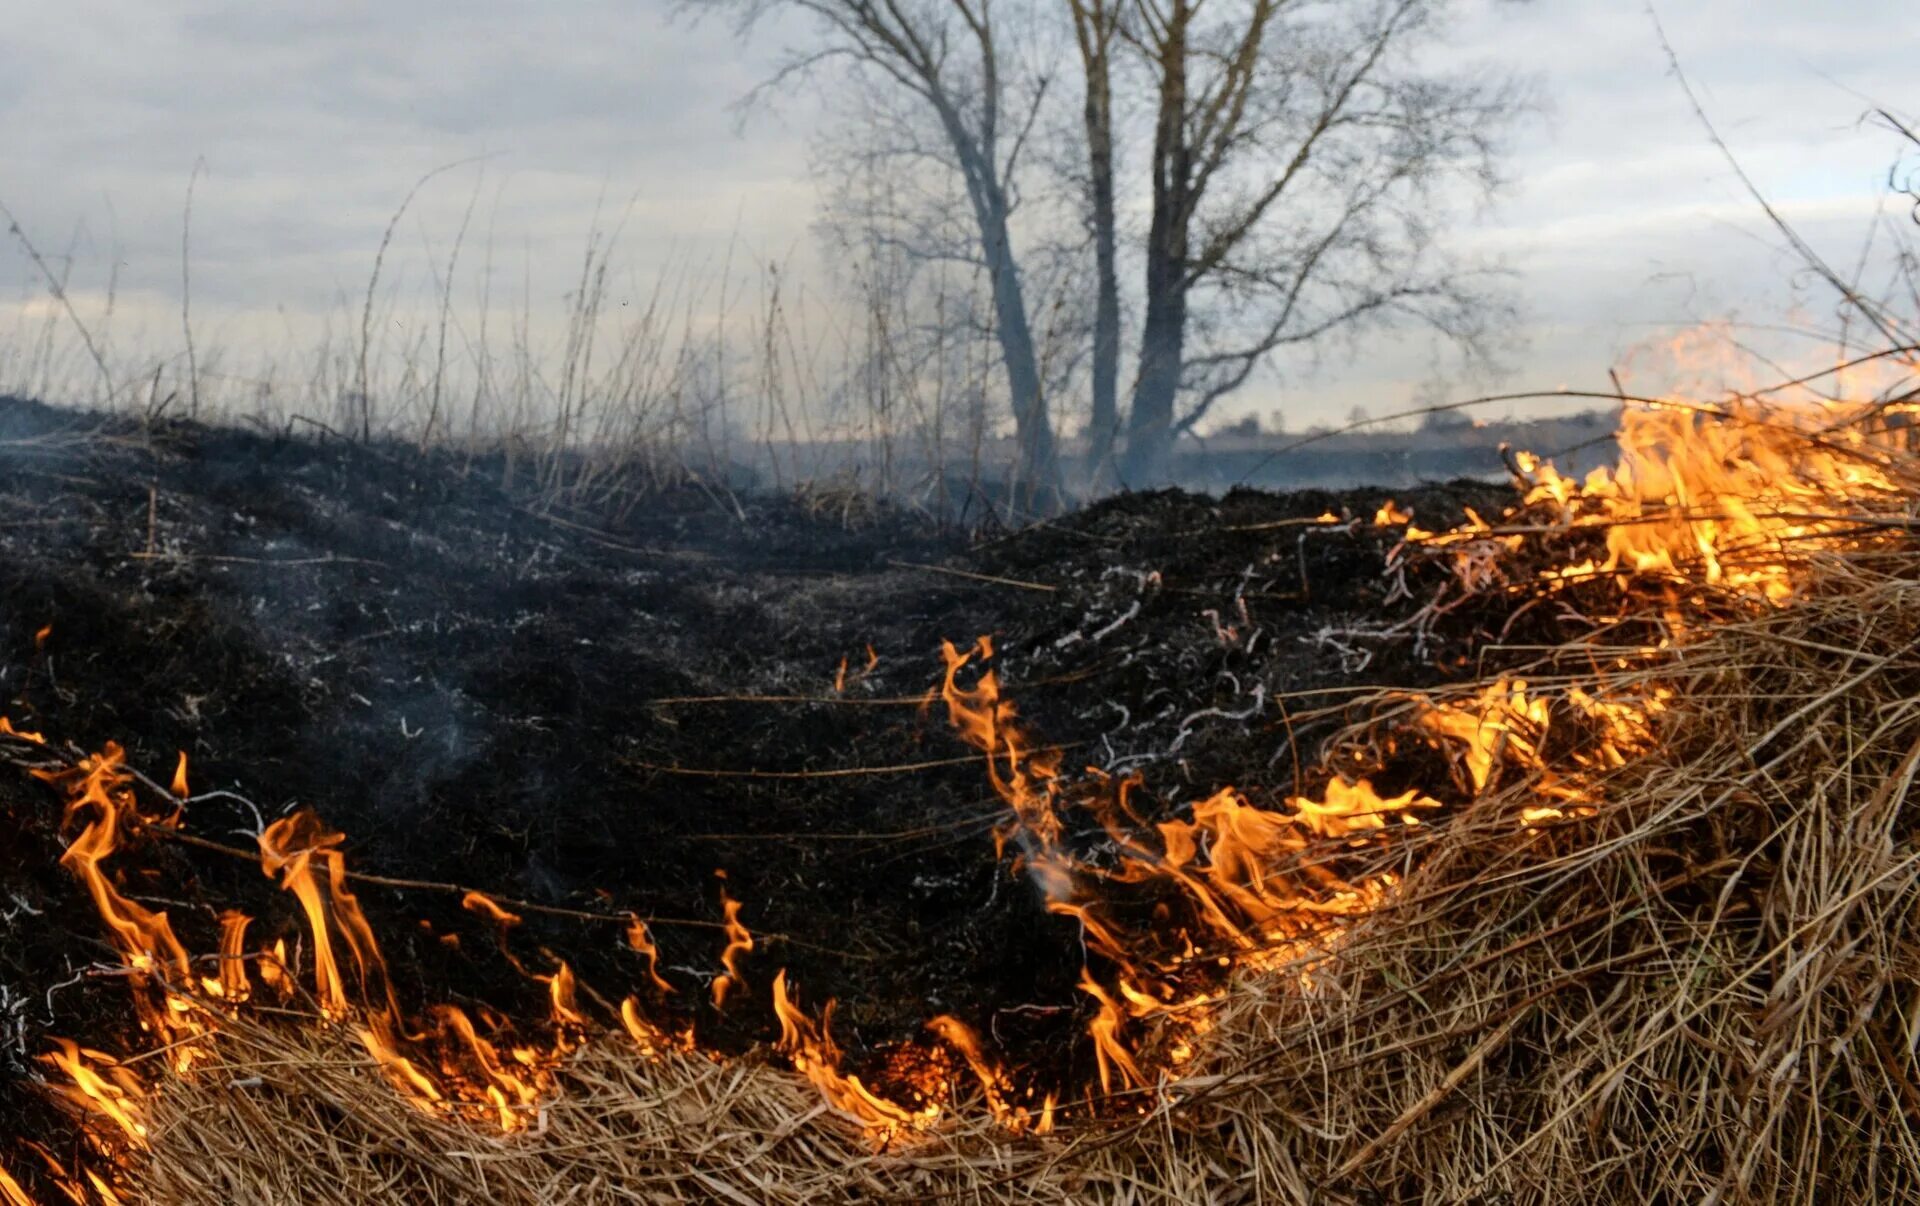 Поле после пожара. Лес после пожара. Выжженная земля после пожара. Пепелище после пожара в лесу. Сжигание полей